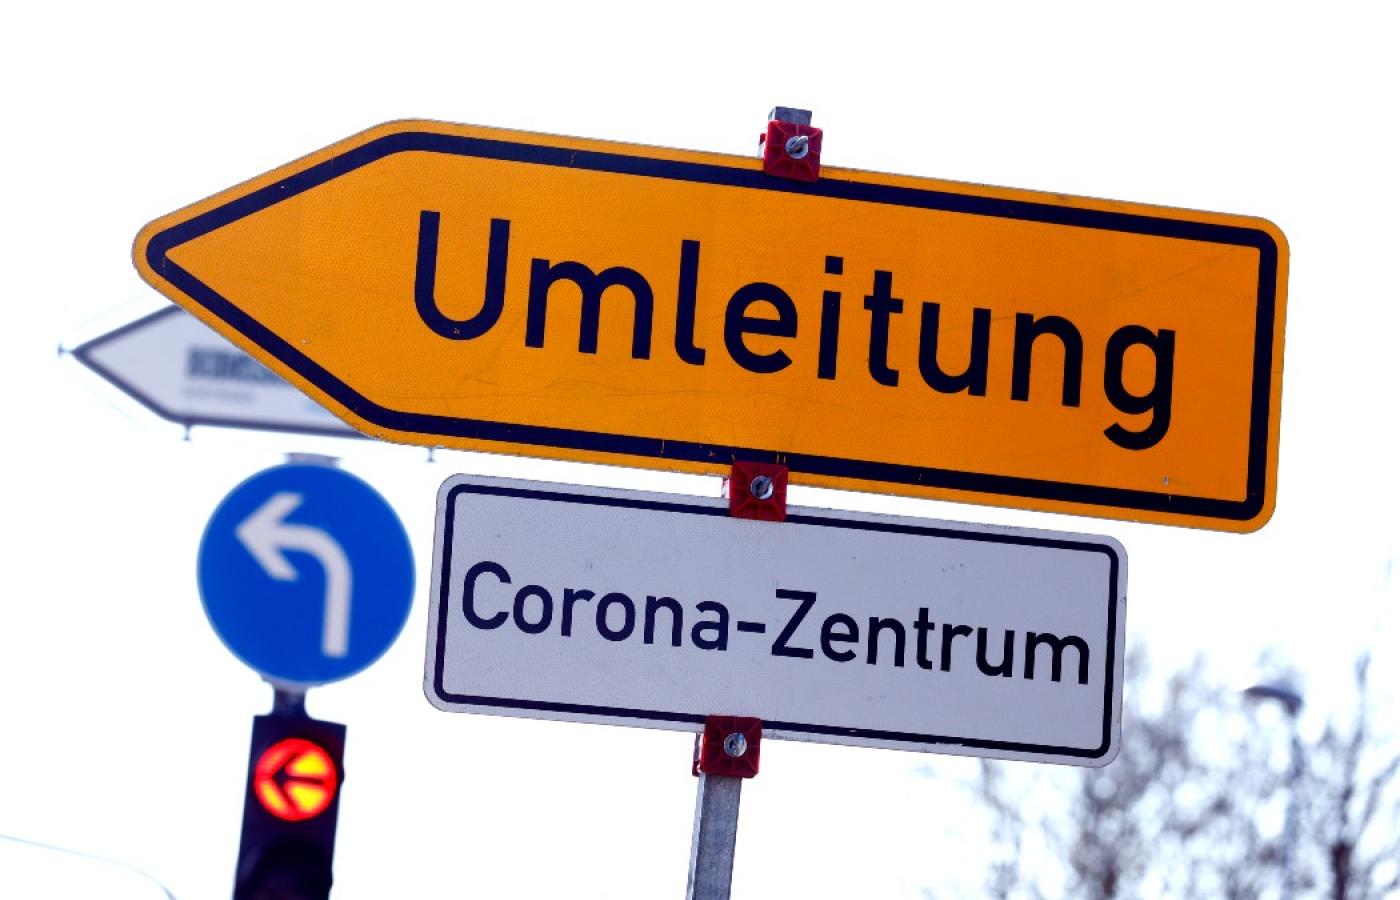 Objazd dla transportu chorych zakażonych koronawirusem w niemieckim Nuertingen. 25 marca 2020 r.